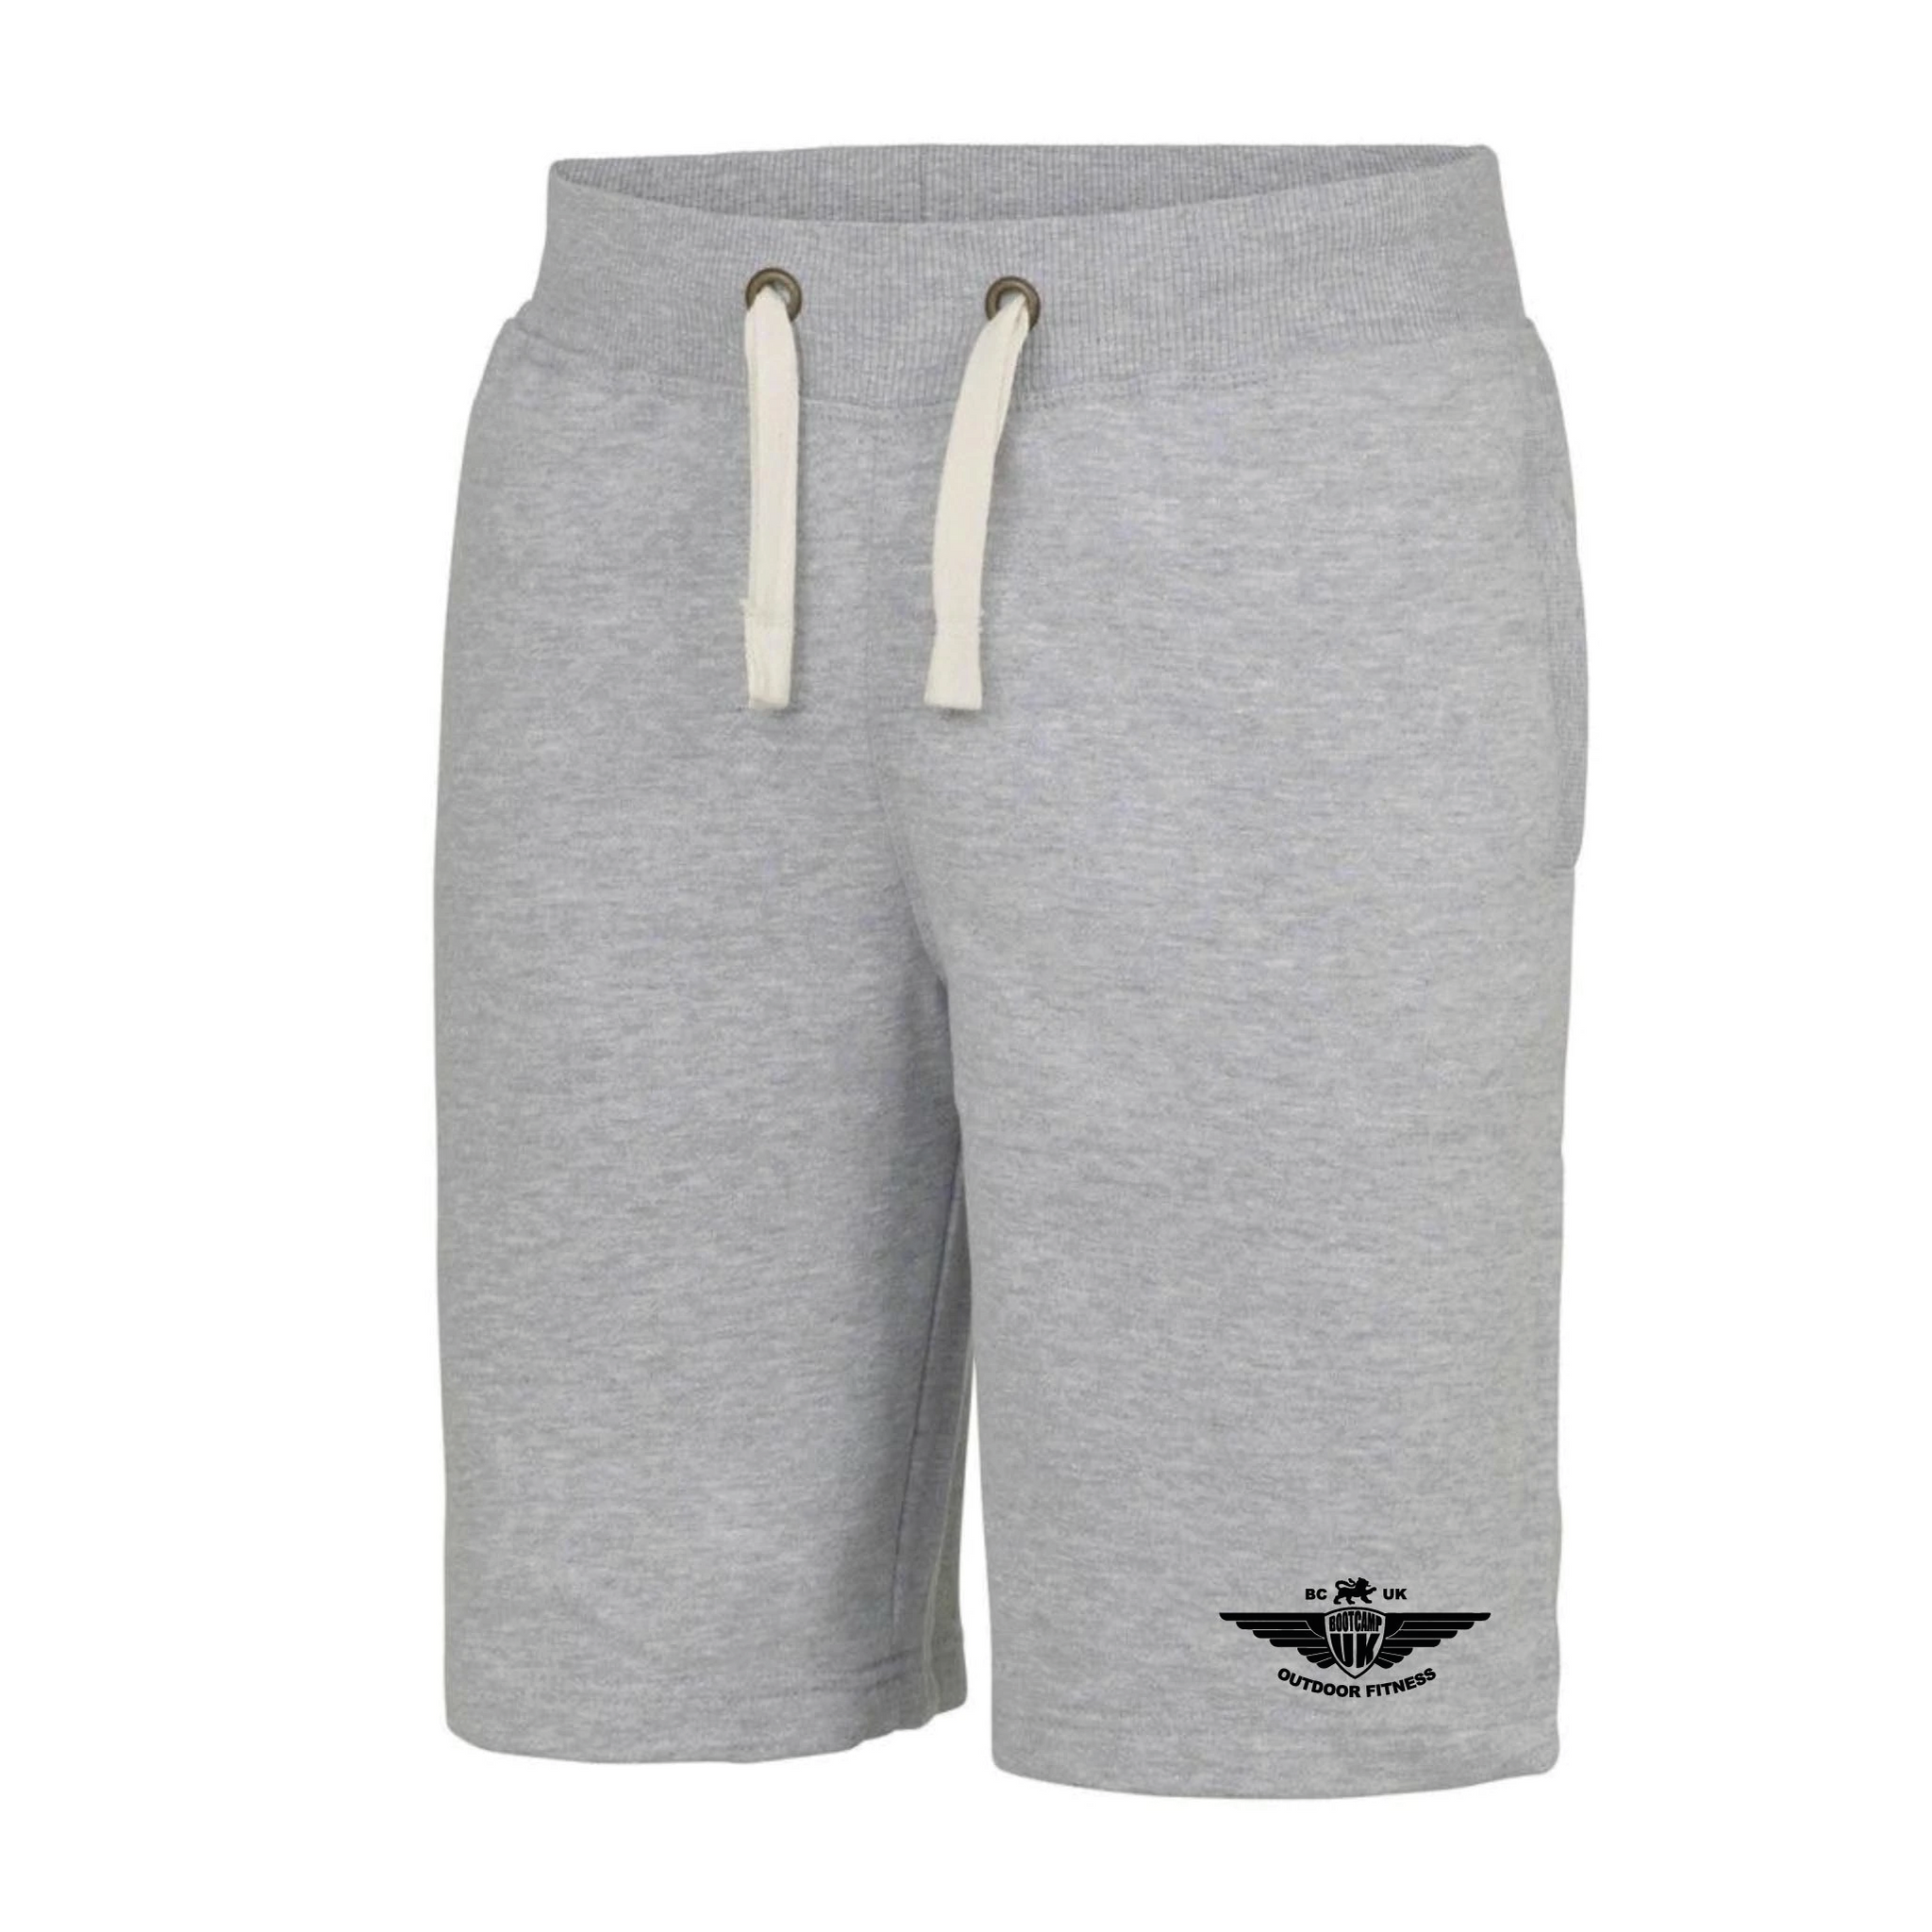 Large Grey Shorts